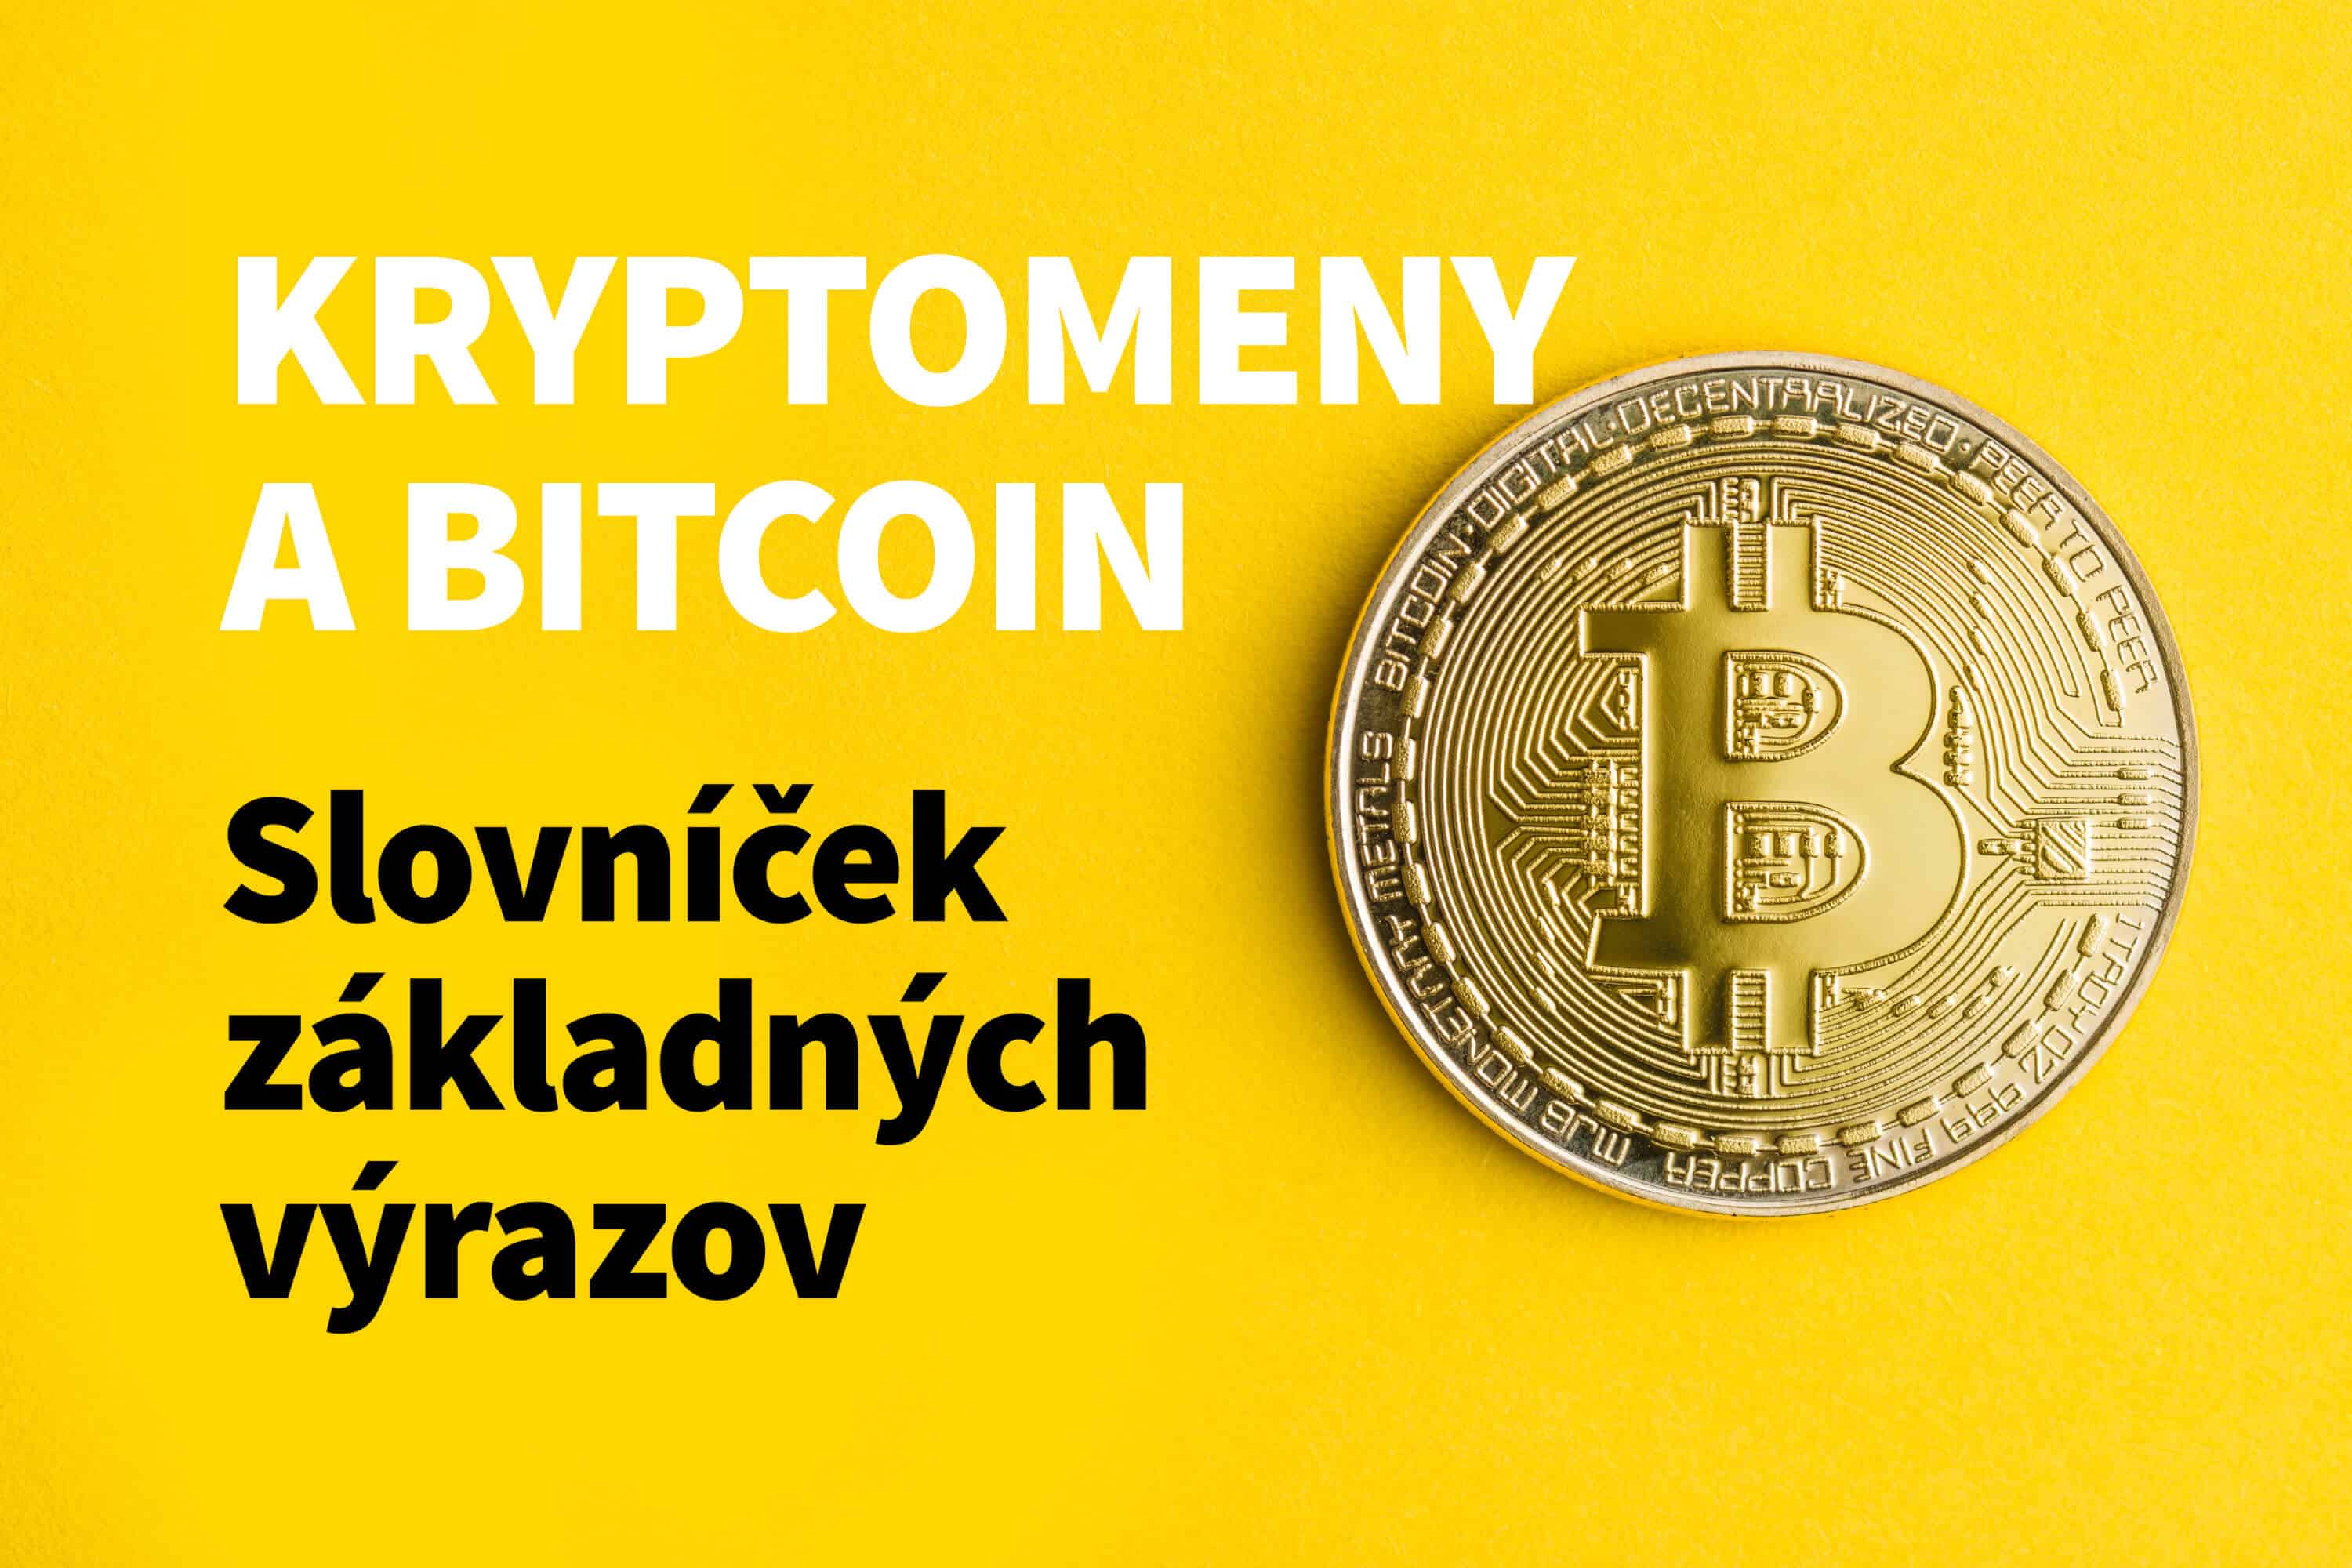 Kryptomeny a bitcoin Kryptomeny a bitcoin: Slovníček 10 základných výrazov - krypto1 e1518520730987 - Kryptomeny a bitcoin: Slovníček 10 základných výrazov